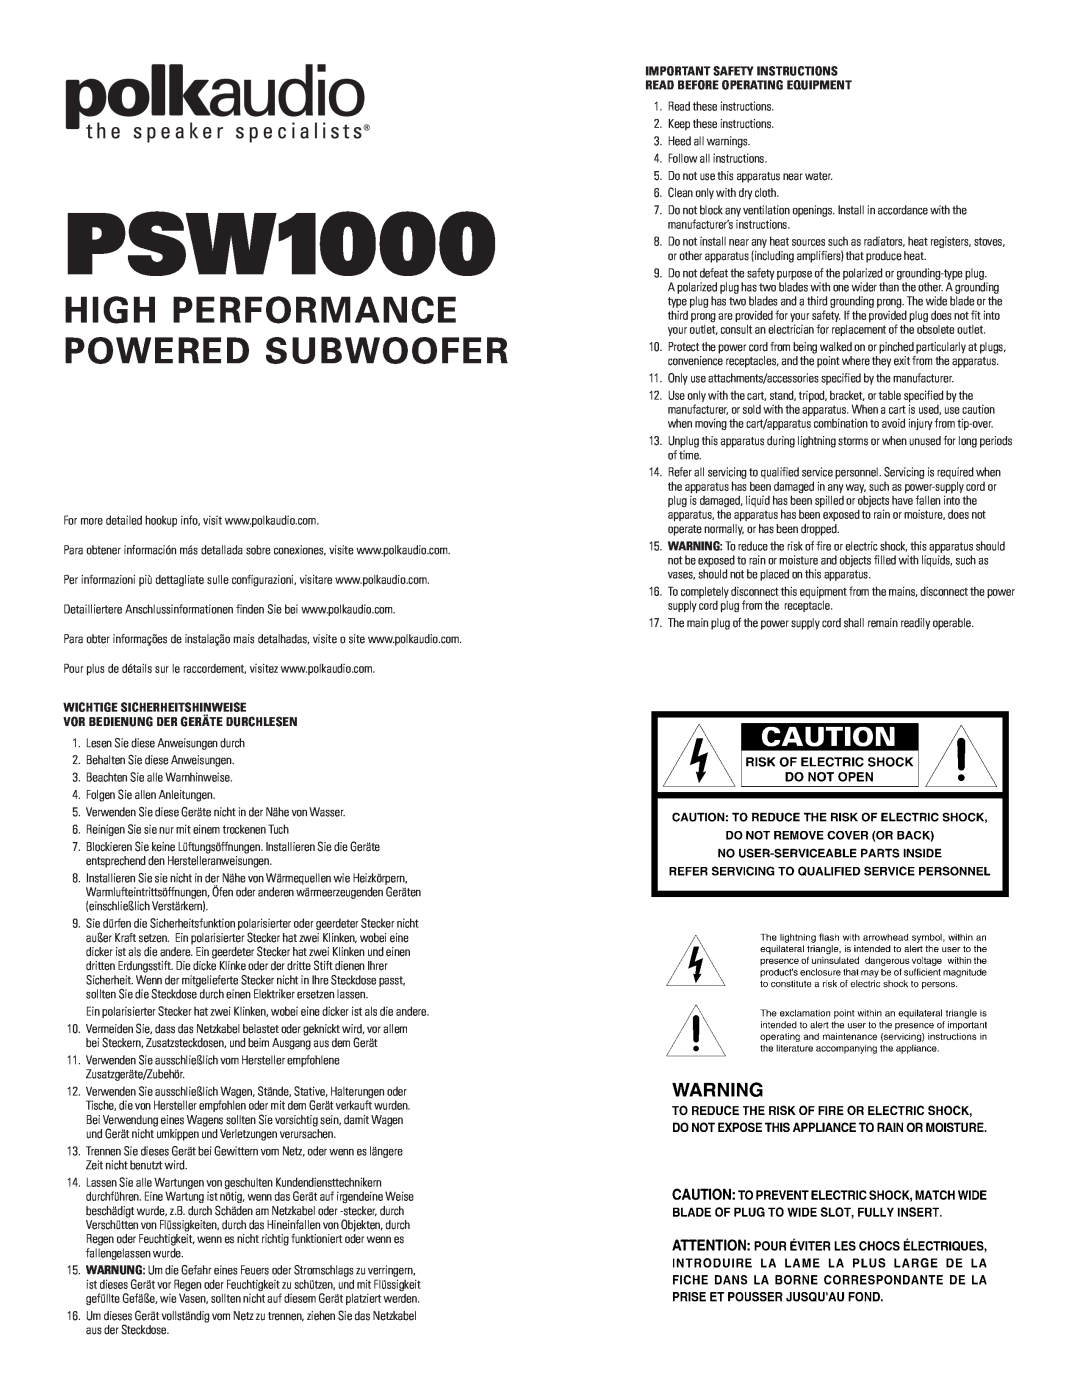 Polk Audio PSW1000 important safety instructions Wichtige Sicherheitshinweise, Vor Bedienung Der Geräte Durchlesen 